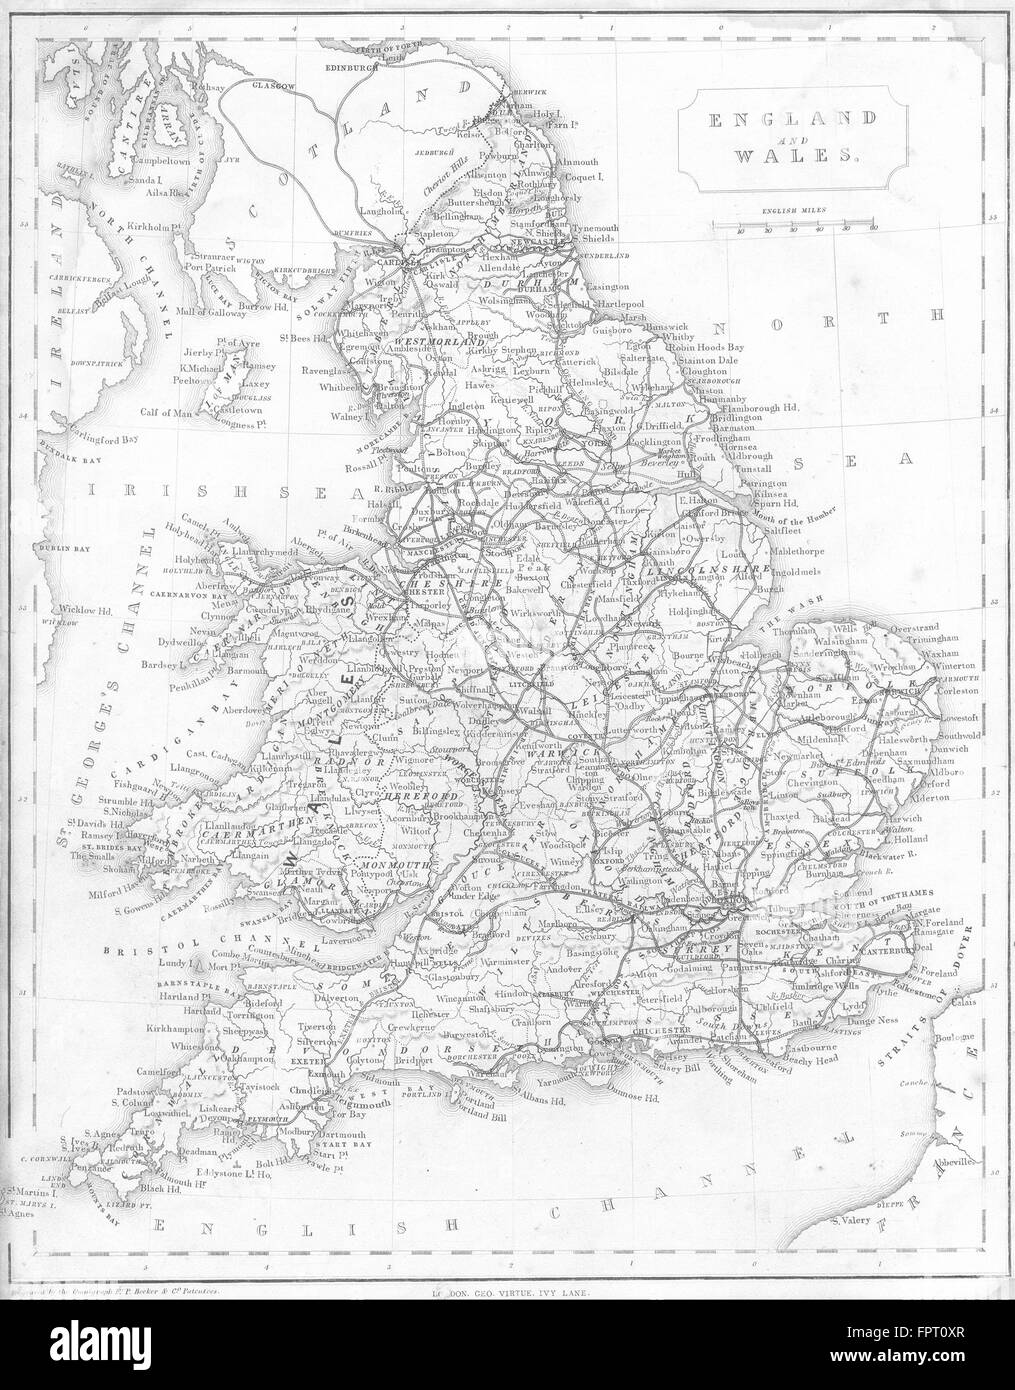 UK: England Wales: Barclay Virtue railways, 1848 antique map Stock Photo